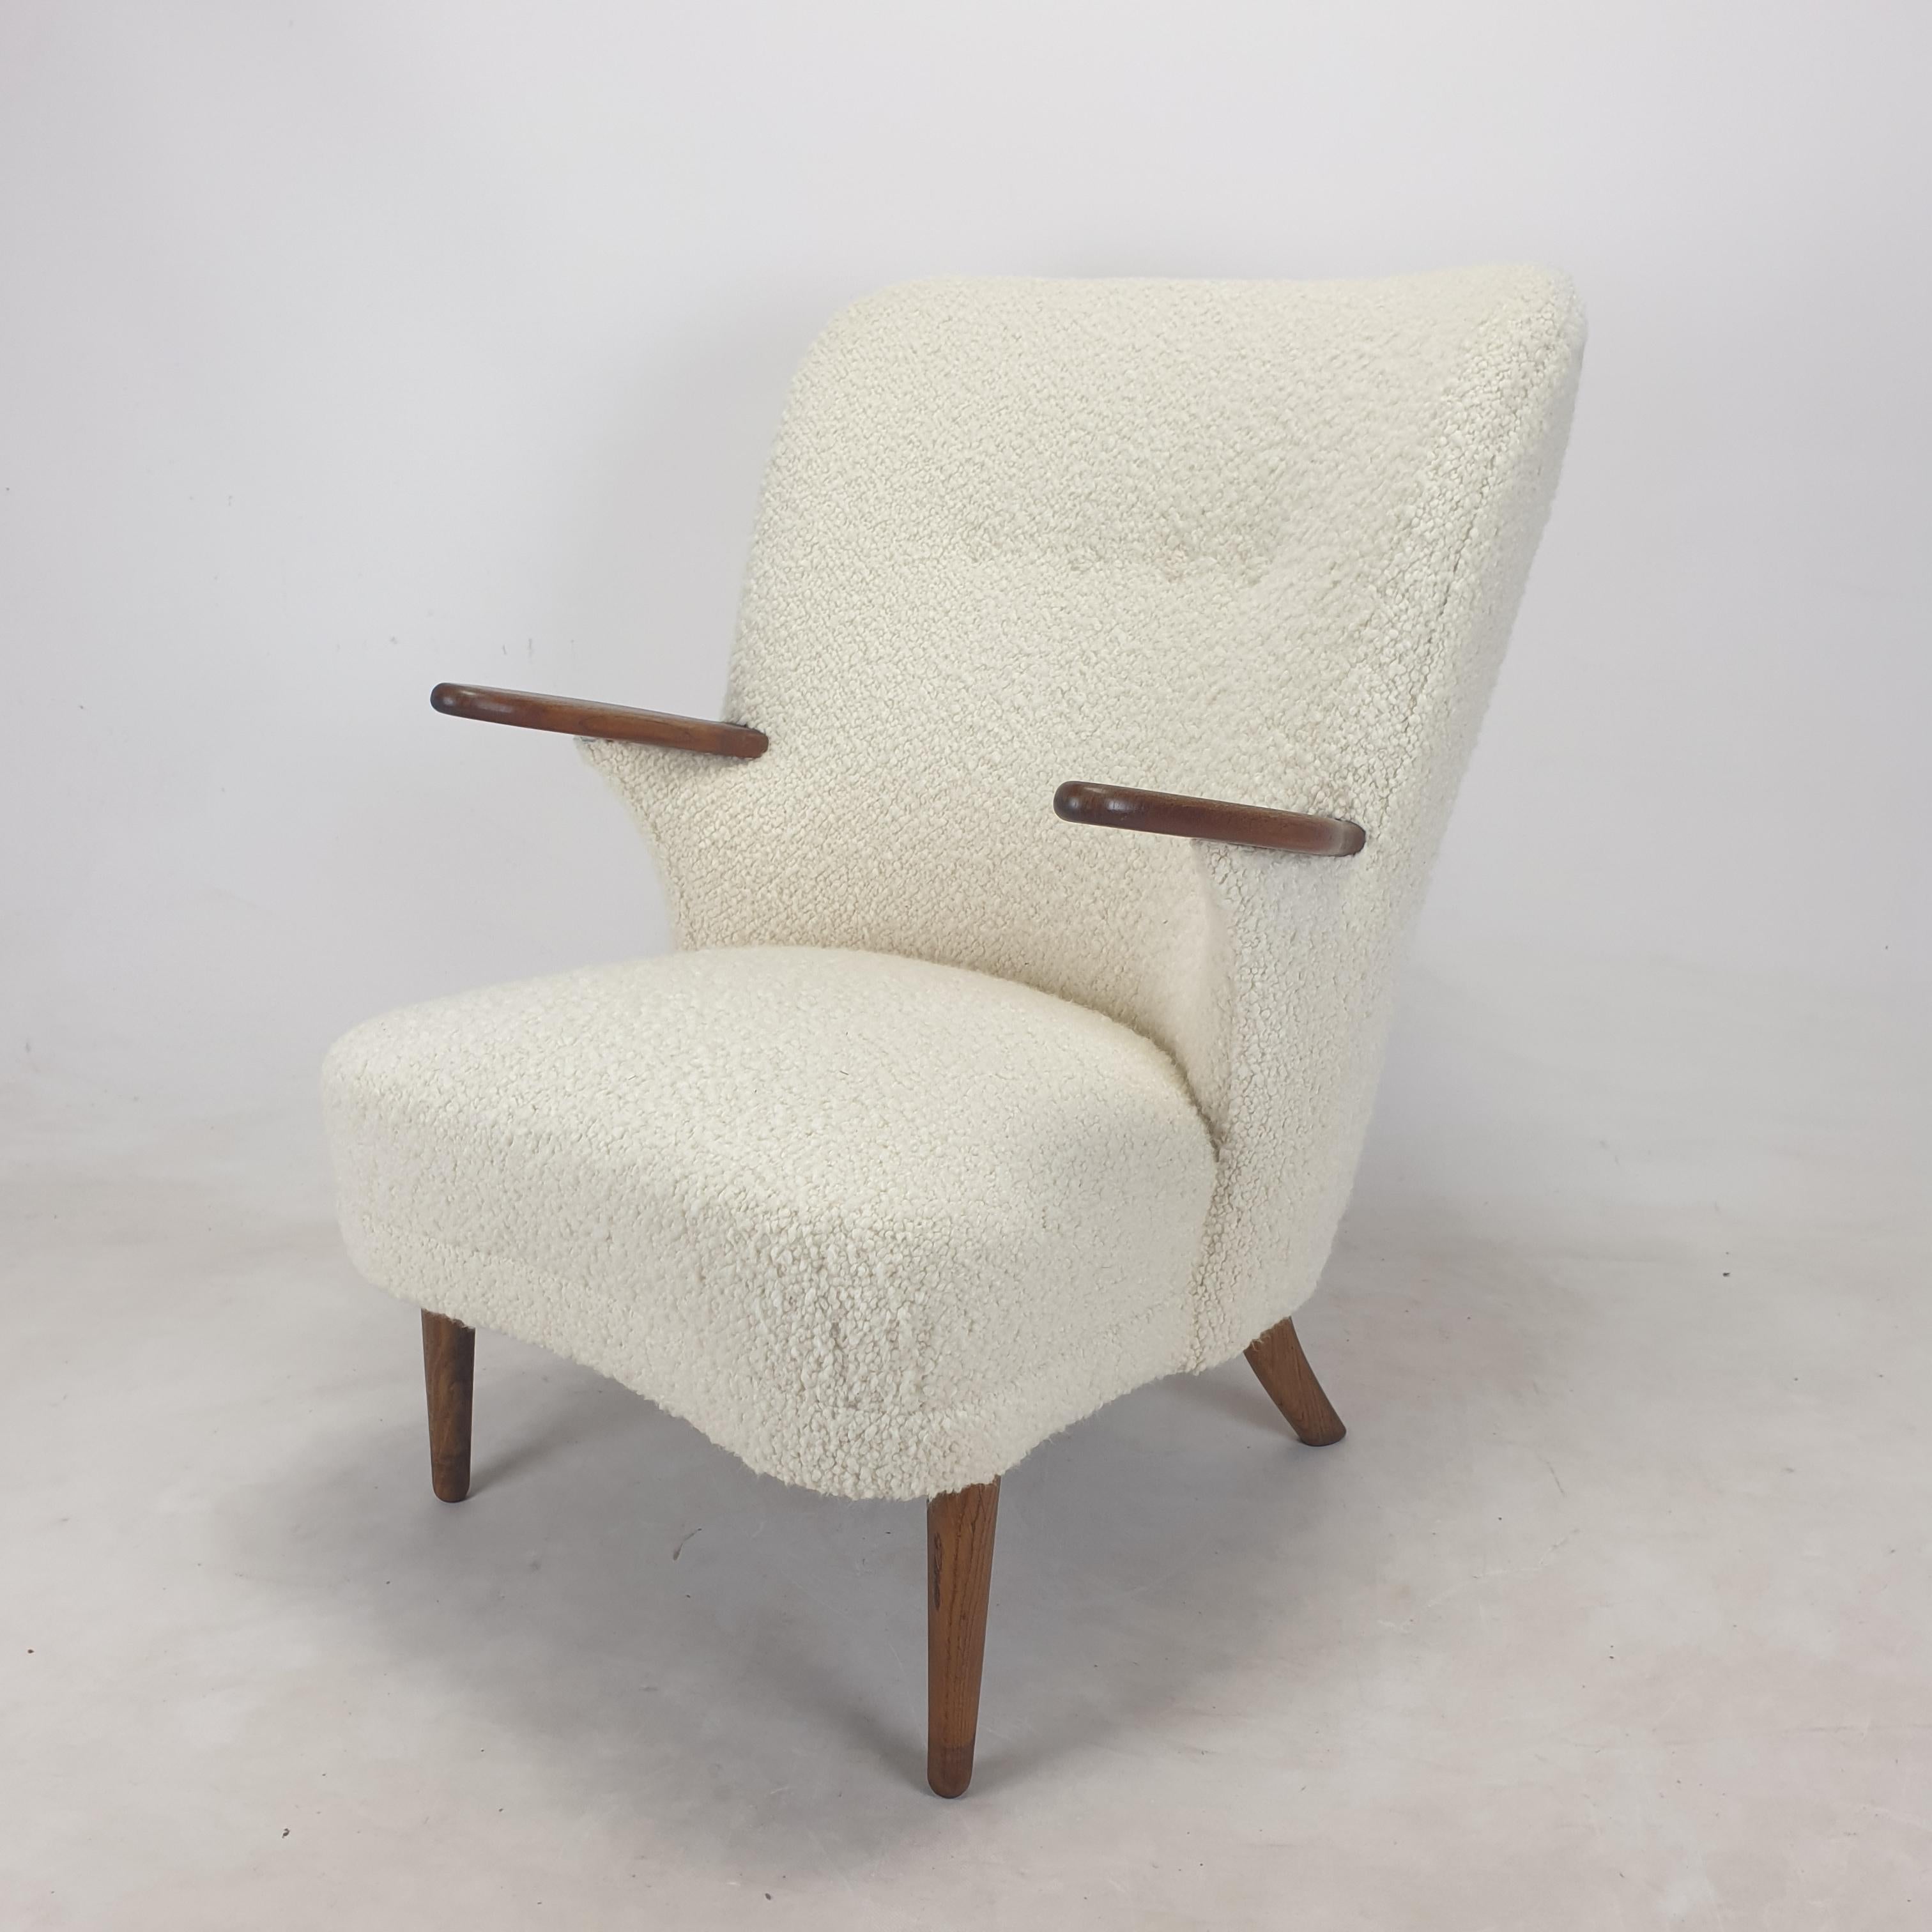 Très rare et confortable ensemble de chaises longues produit par Kronen Aarhus, Danemark 1950's. 
Il existe une version supérieure (homme) et une version inférieure (femme), ce qui en fait une paire.

Les deux chaises de ce superbe modèle